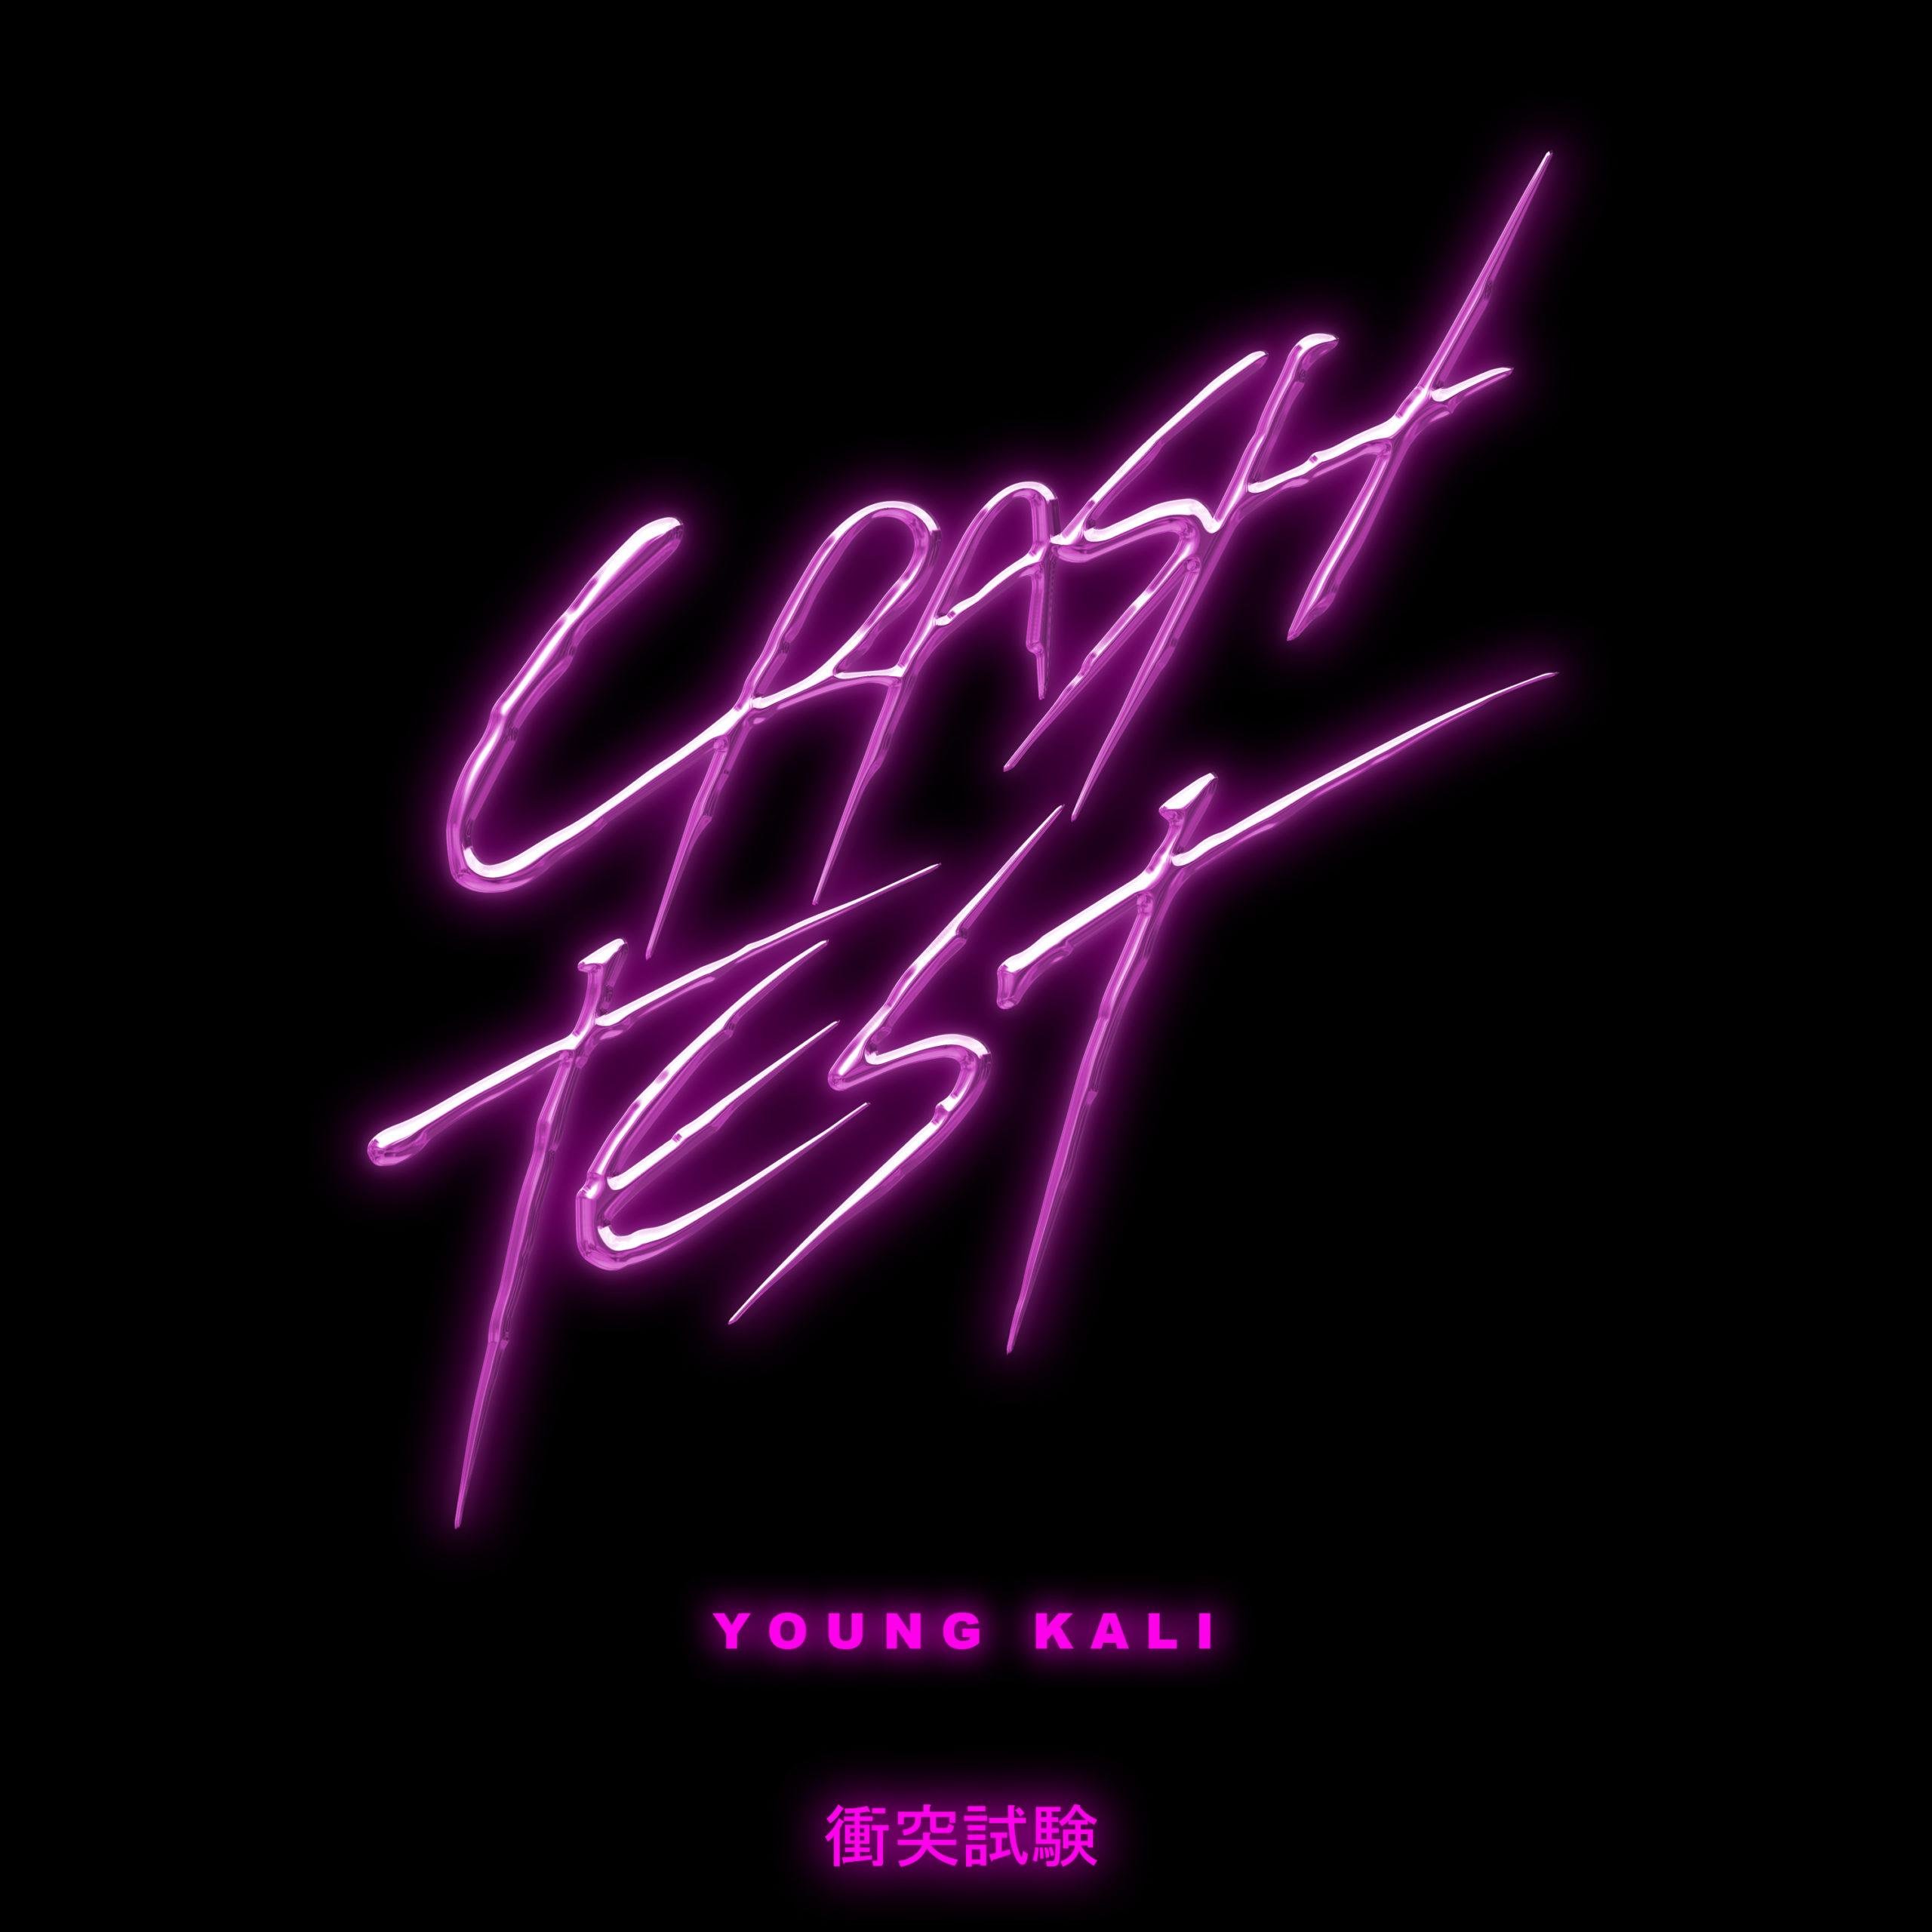 Arriva “CRASH TEST” il nuovo progetto di YOUNG KALI